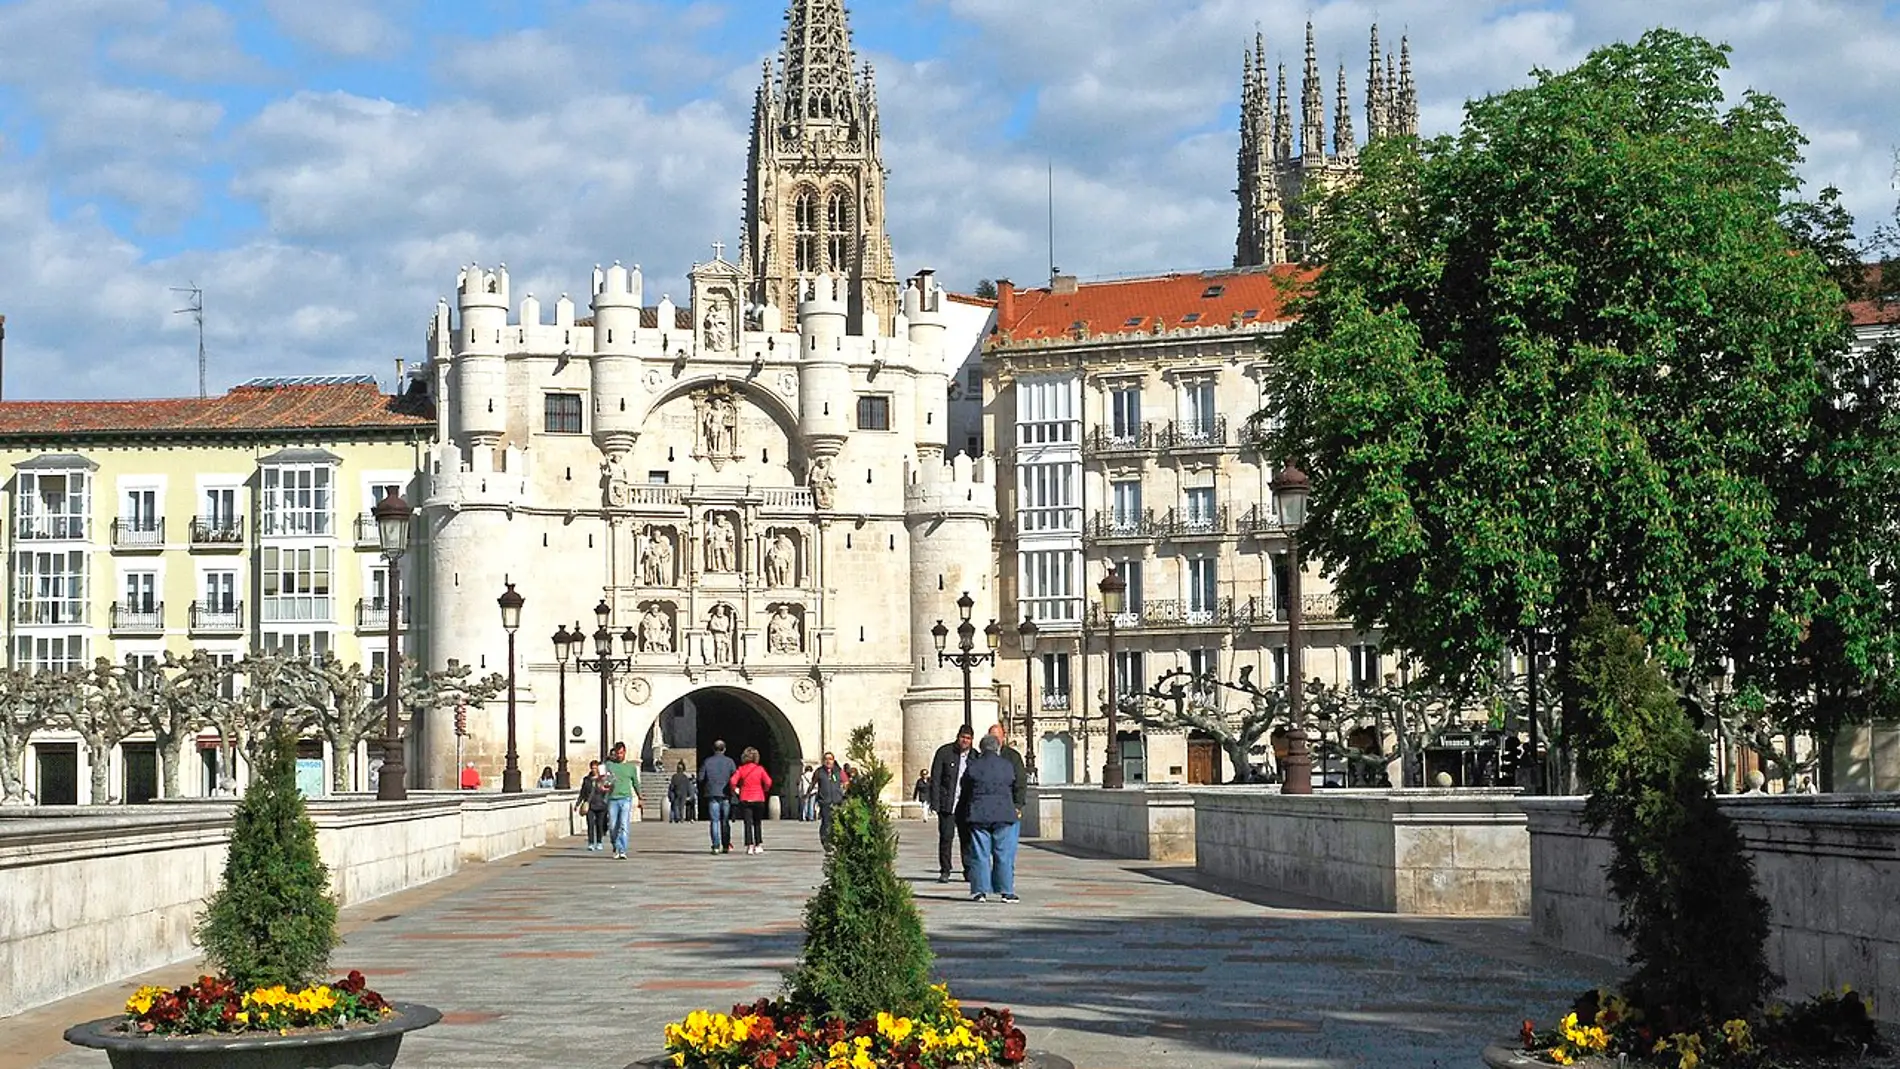 Arco de Santa María de Burgos